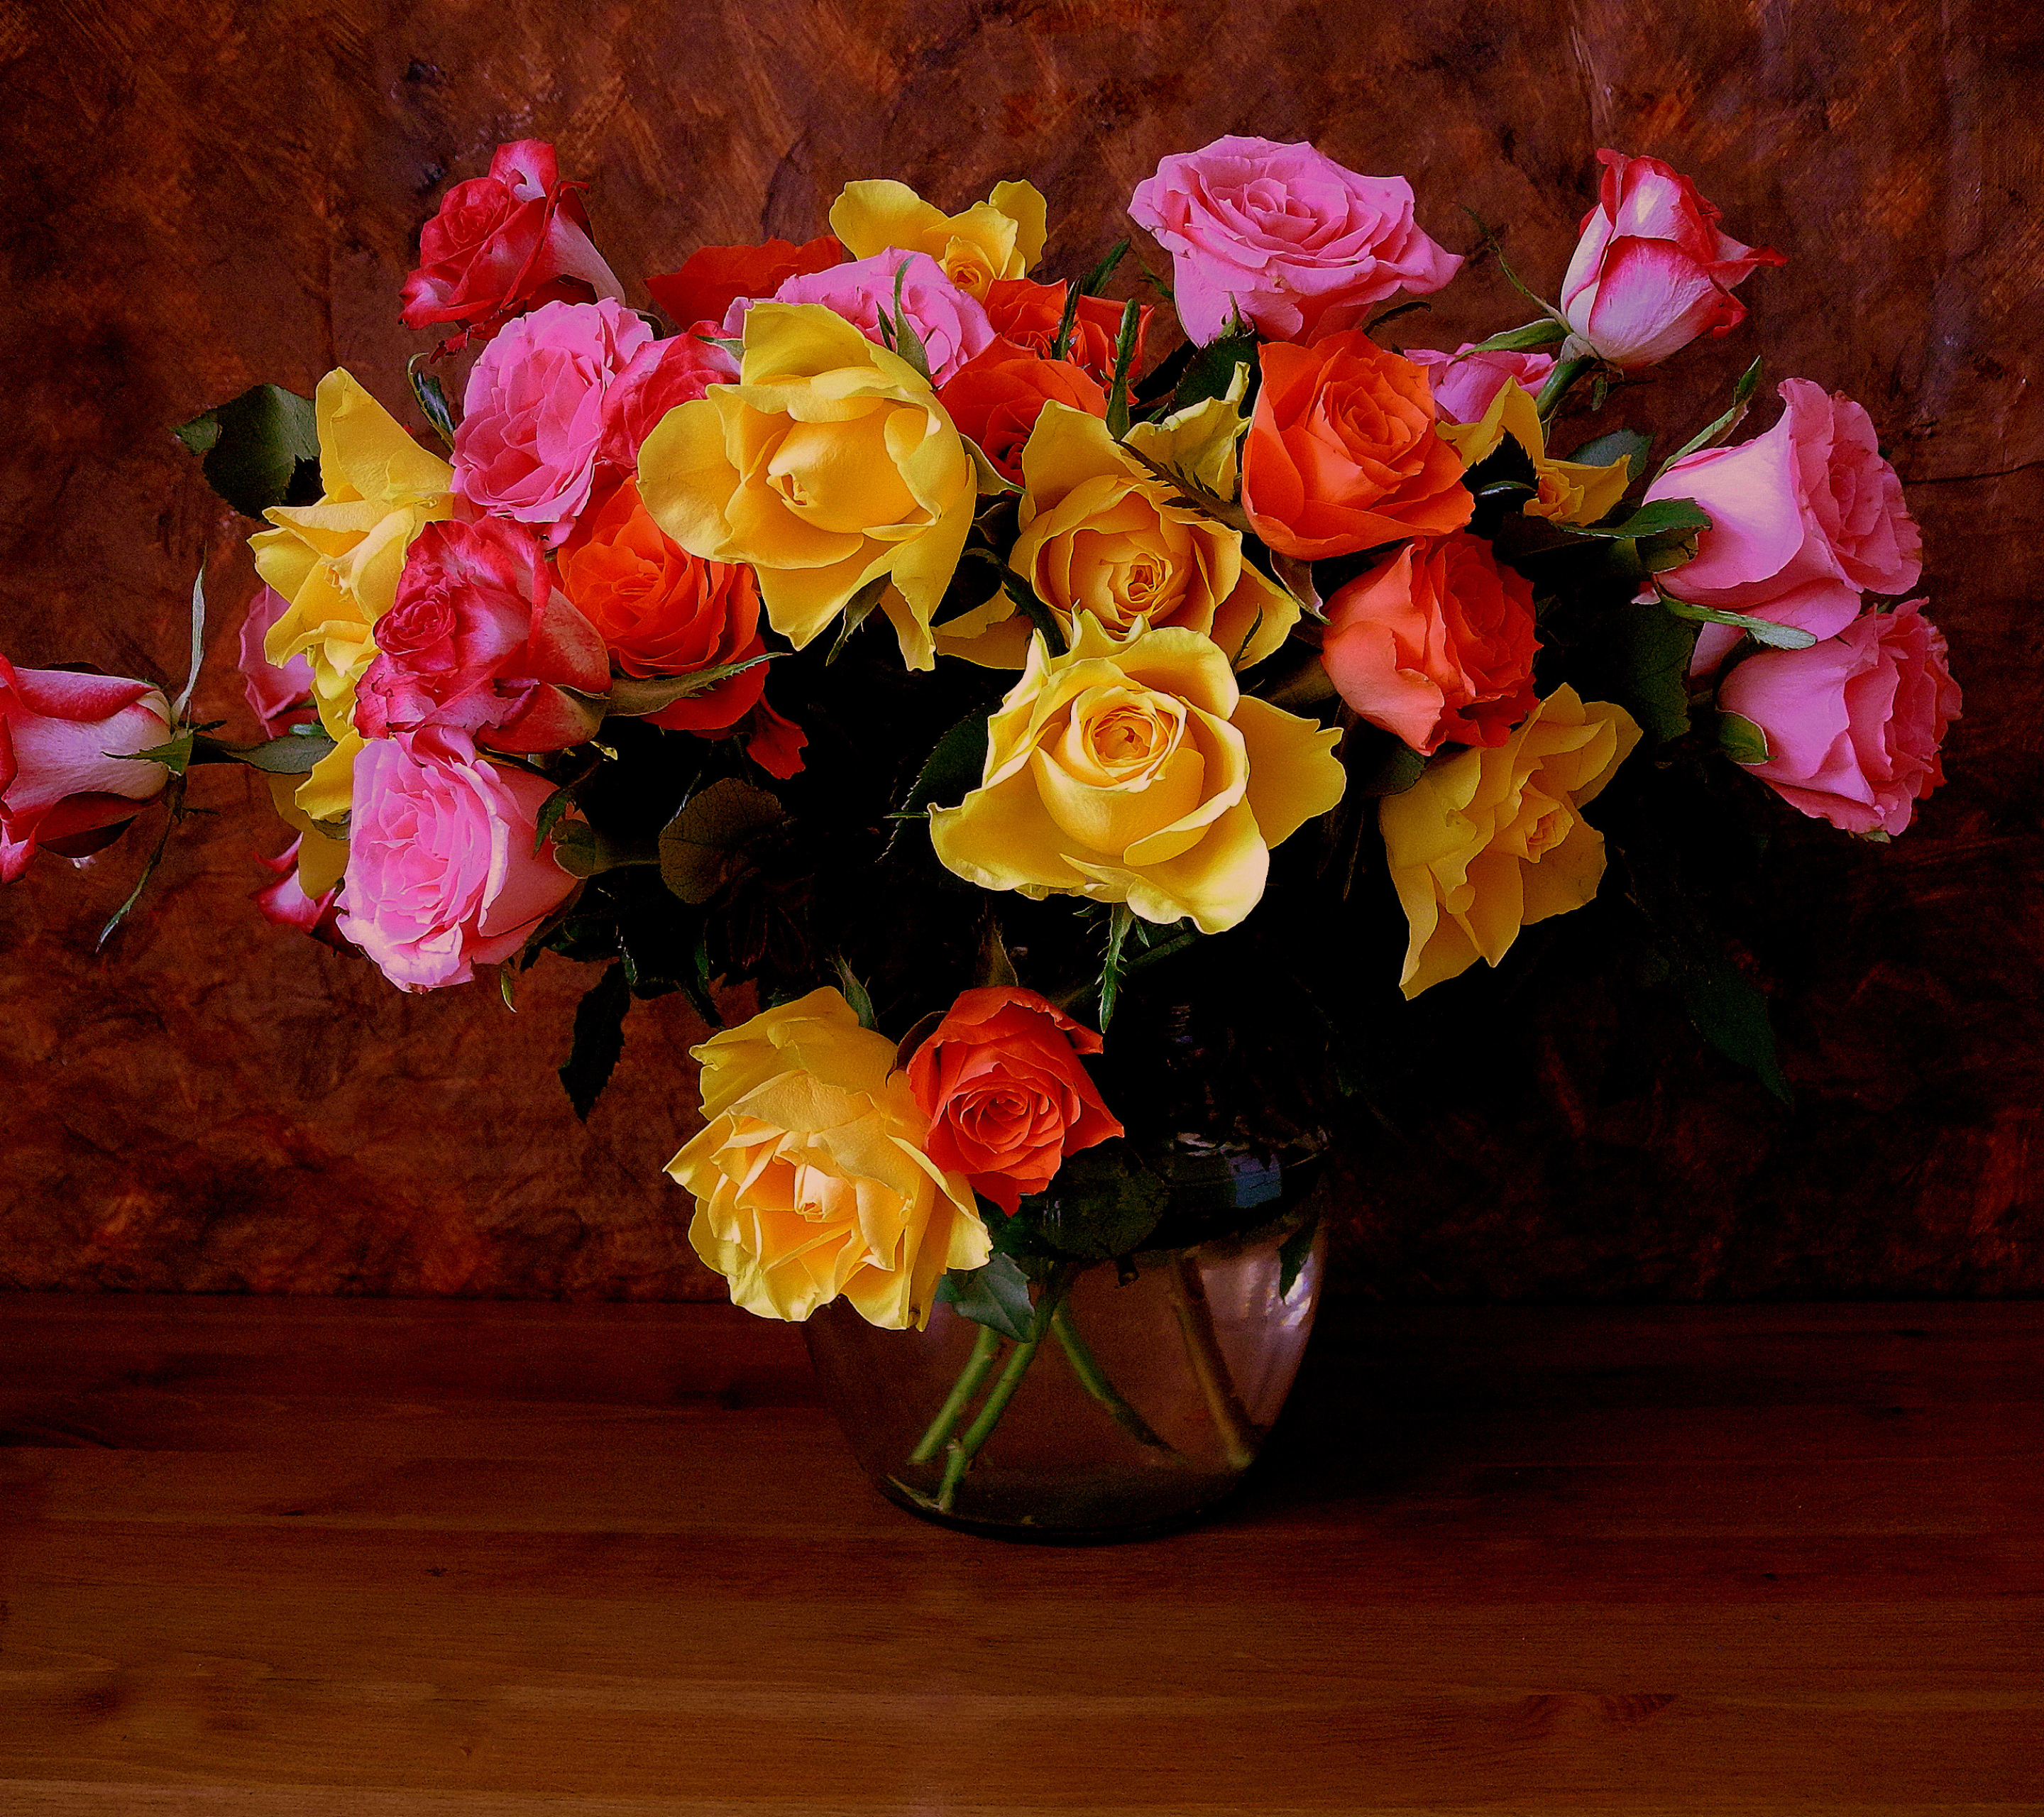 Скачать обои бесплатно Цветок, Роза, Цвета, Ваза, Красочный, Желтый Цветок, Сделано Человеком, Розовый Цветок, Оранжевый Цветок картинка на рабочий стол ПК